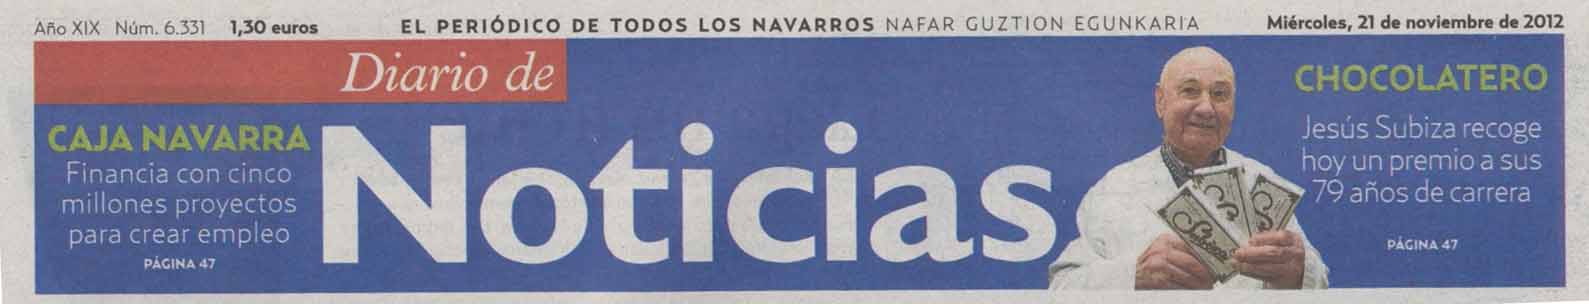 Diario de N oticias cabecera copiar.jpg (35020 bytes)